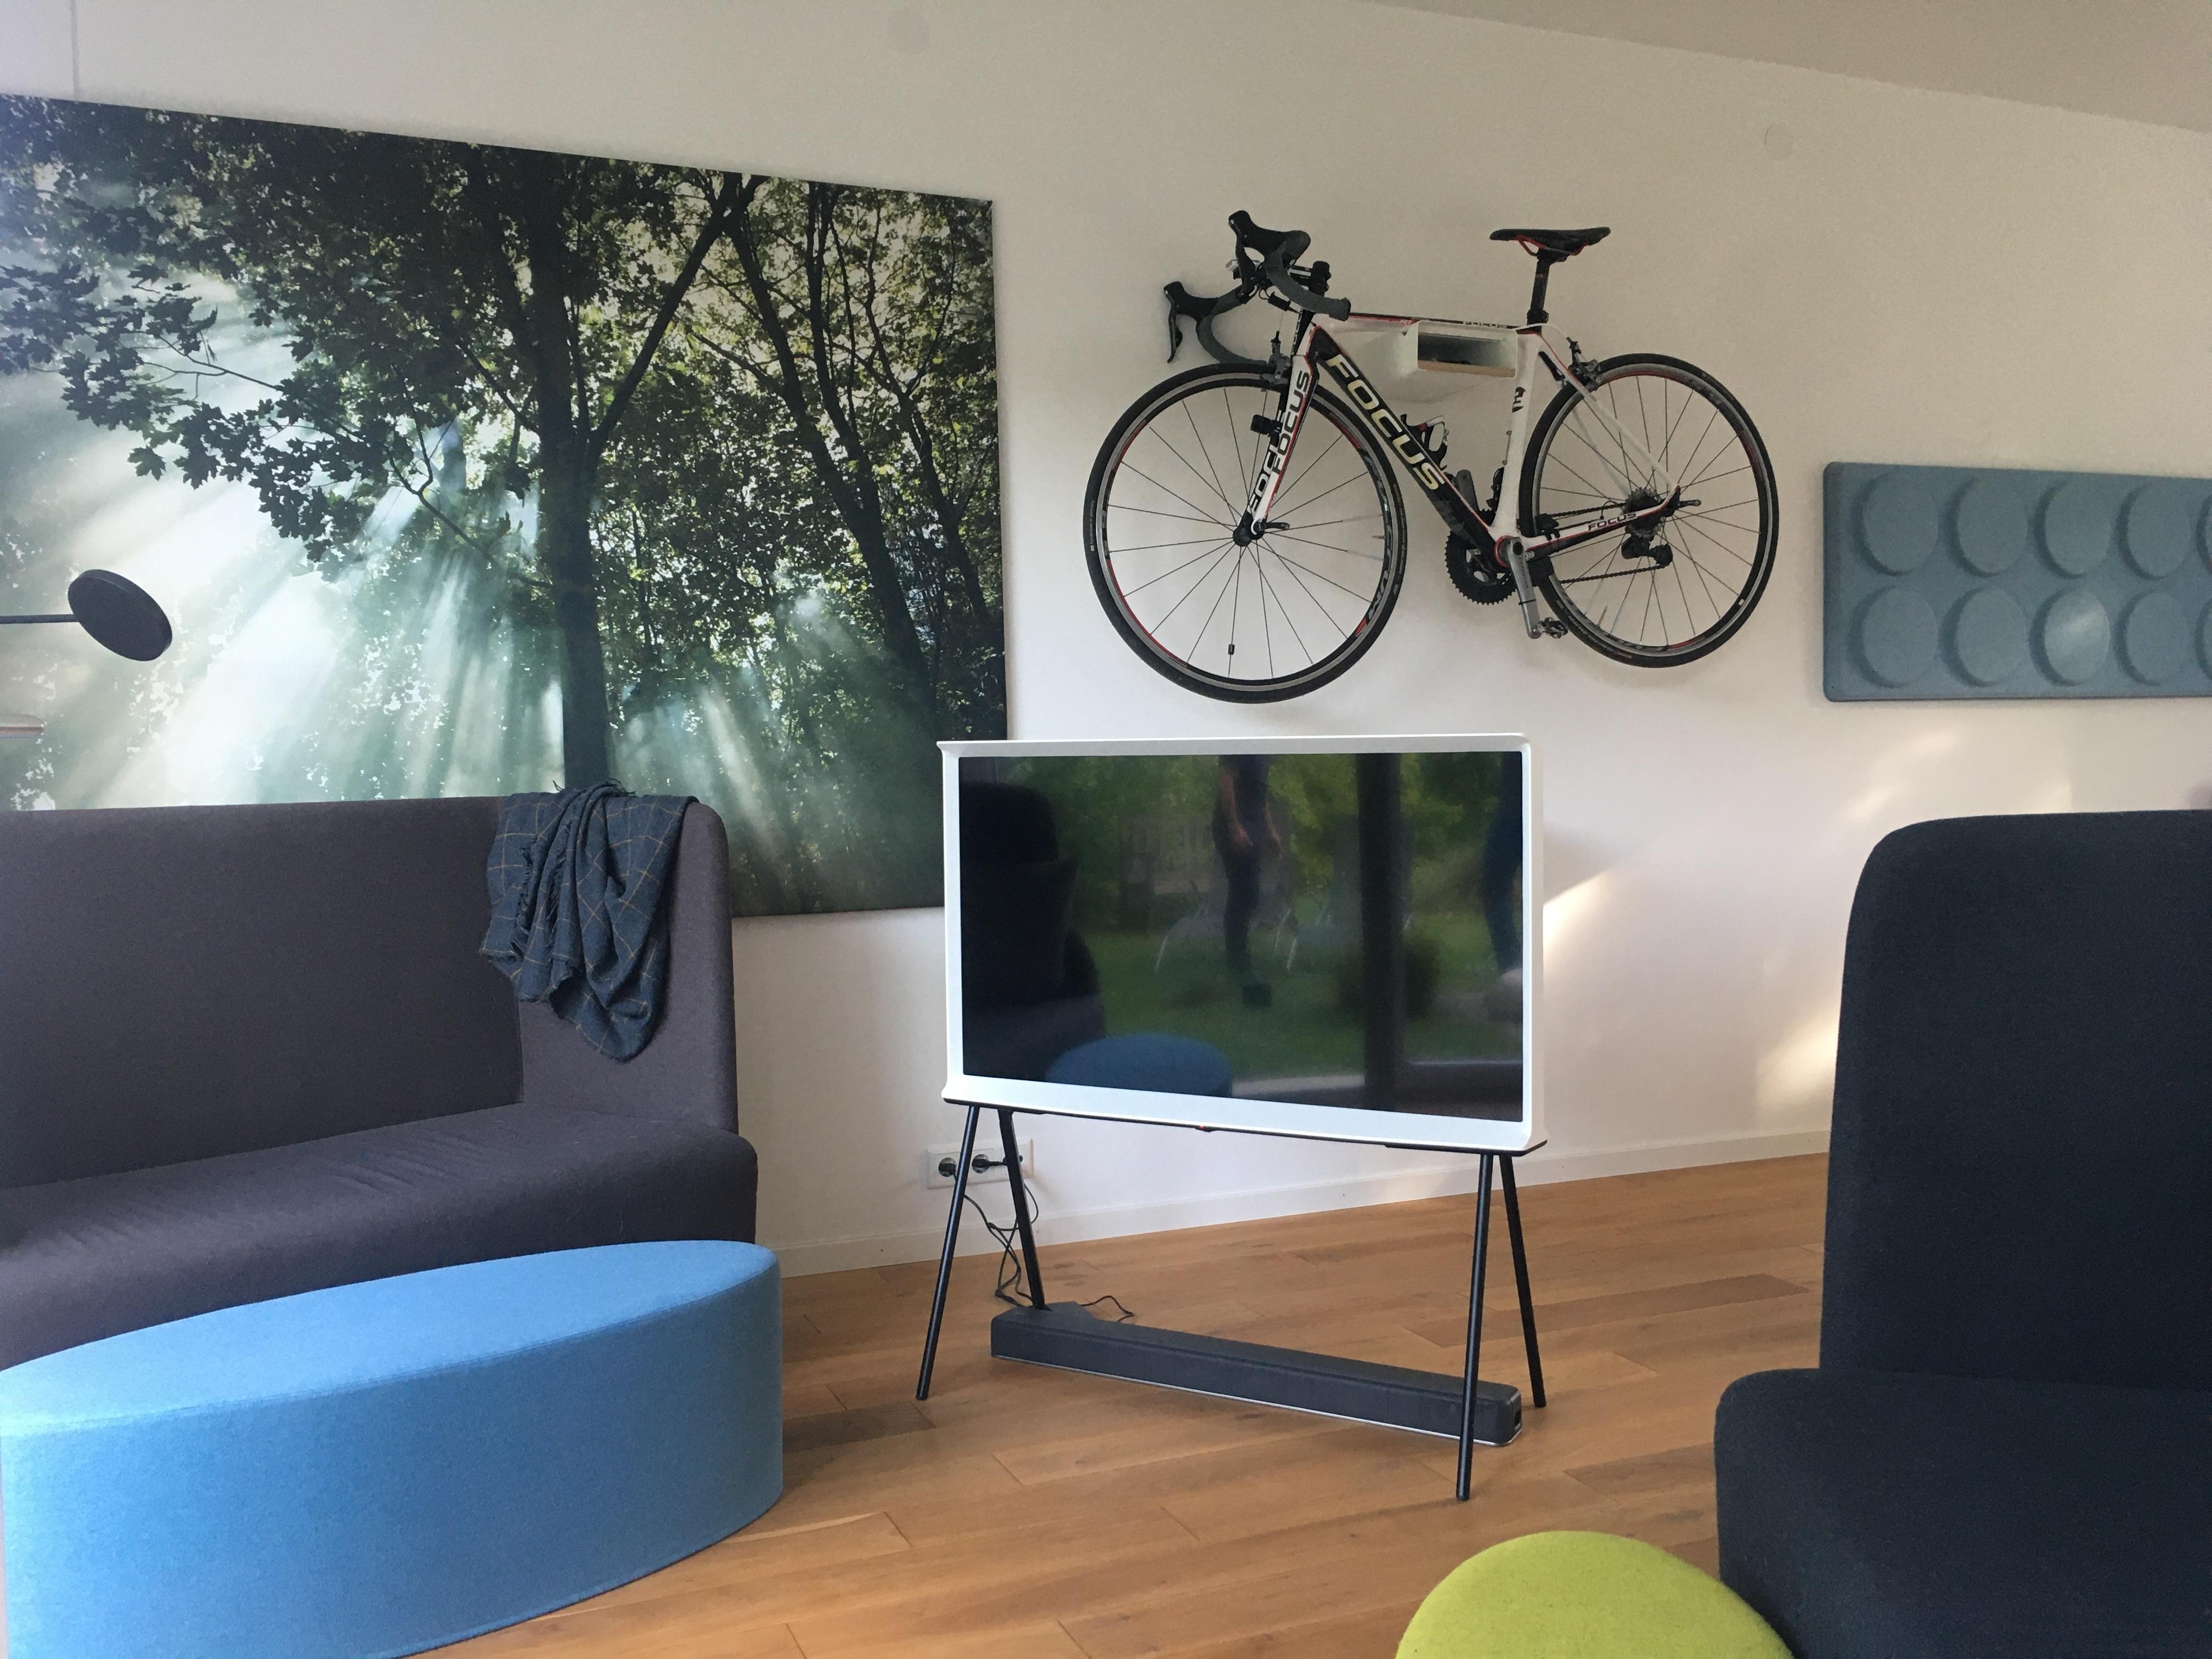 Zu Besuch bei meinen Eltern ❤️
#Wohnzimmer #SamsungTV #Radfahrerfamilie 